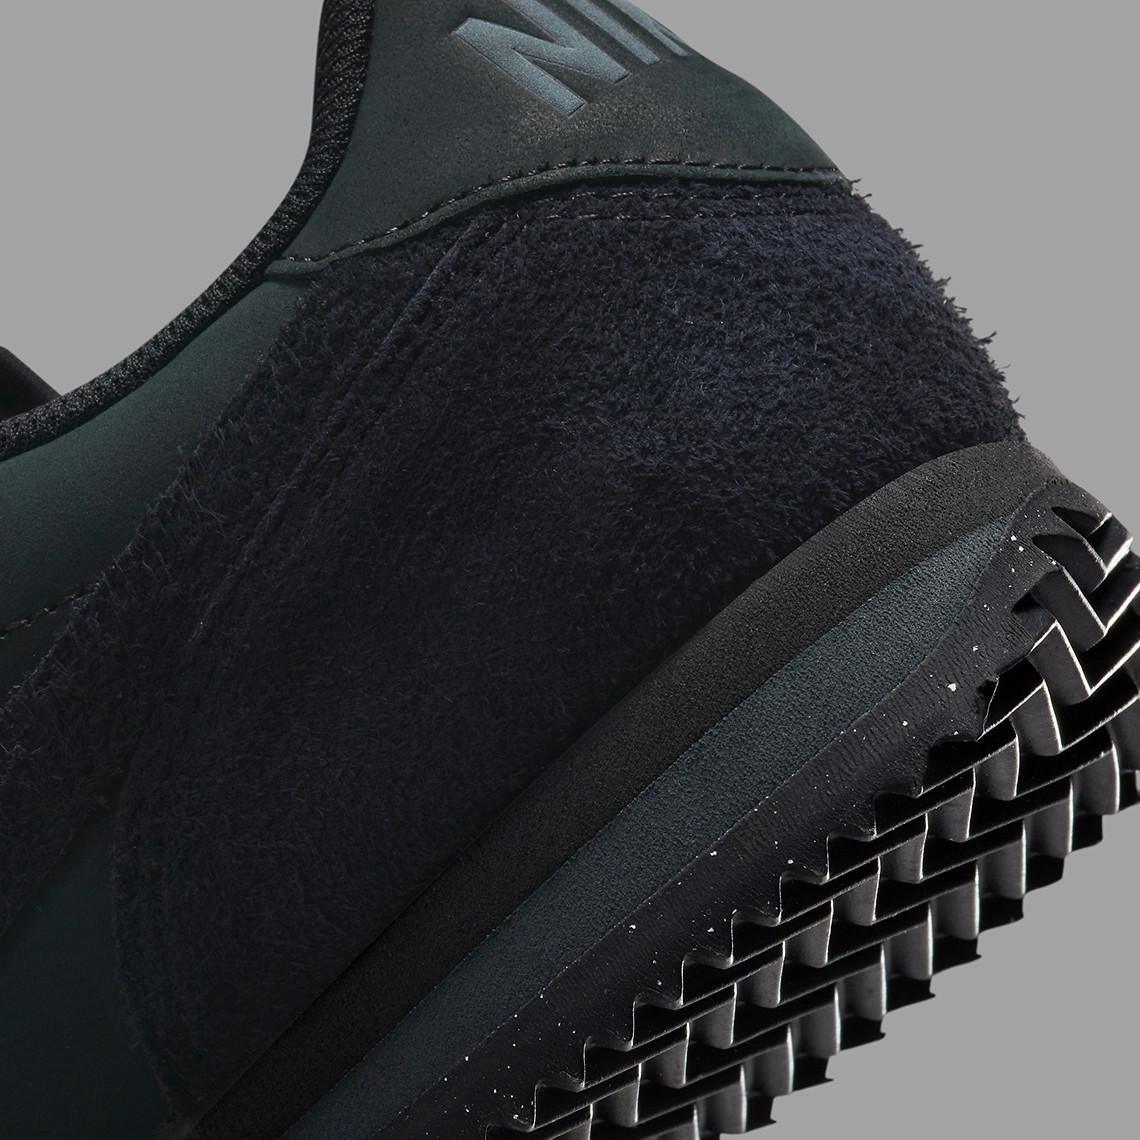 La Nike Cortez 23 reçoit le traitement tout noir